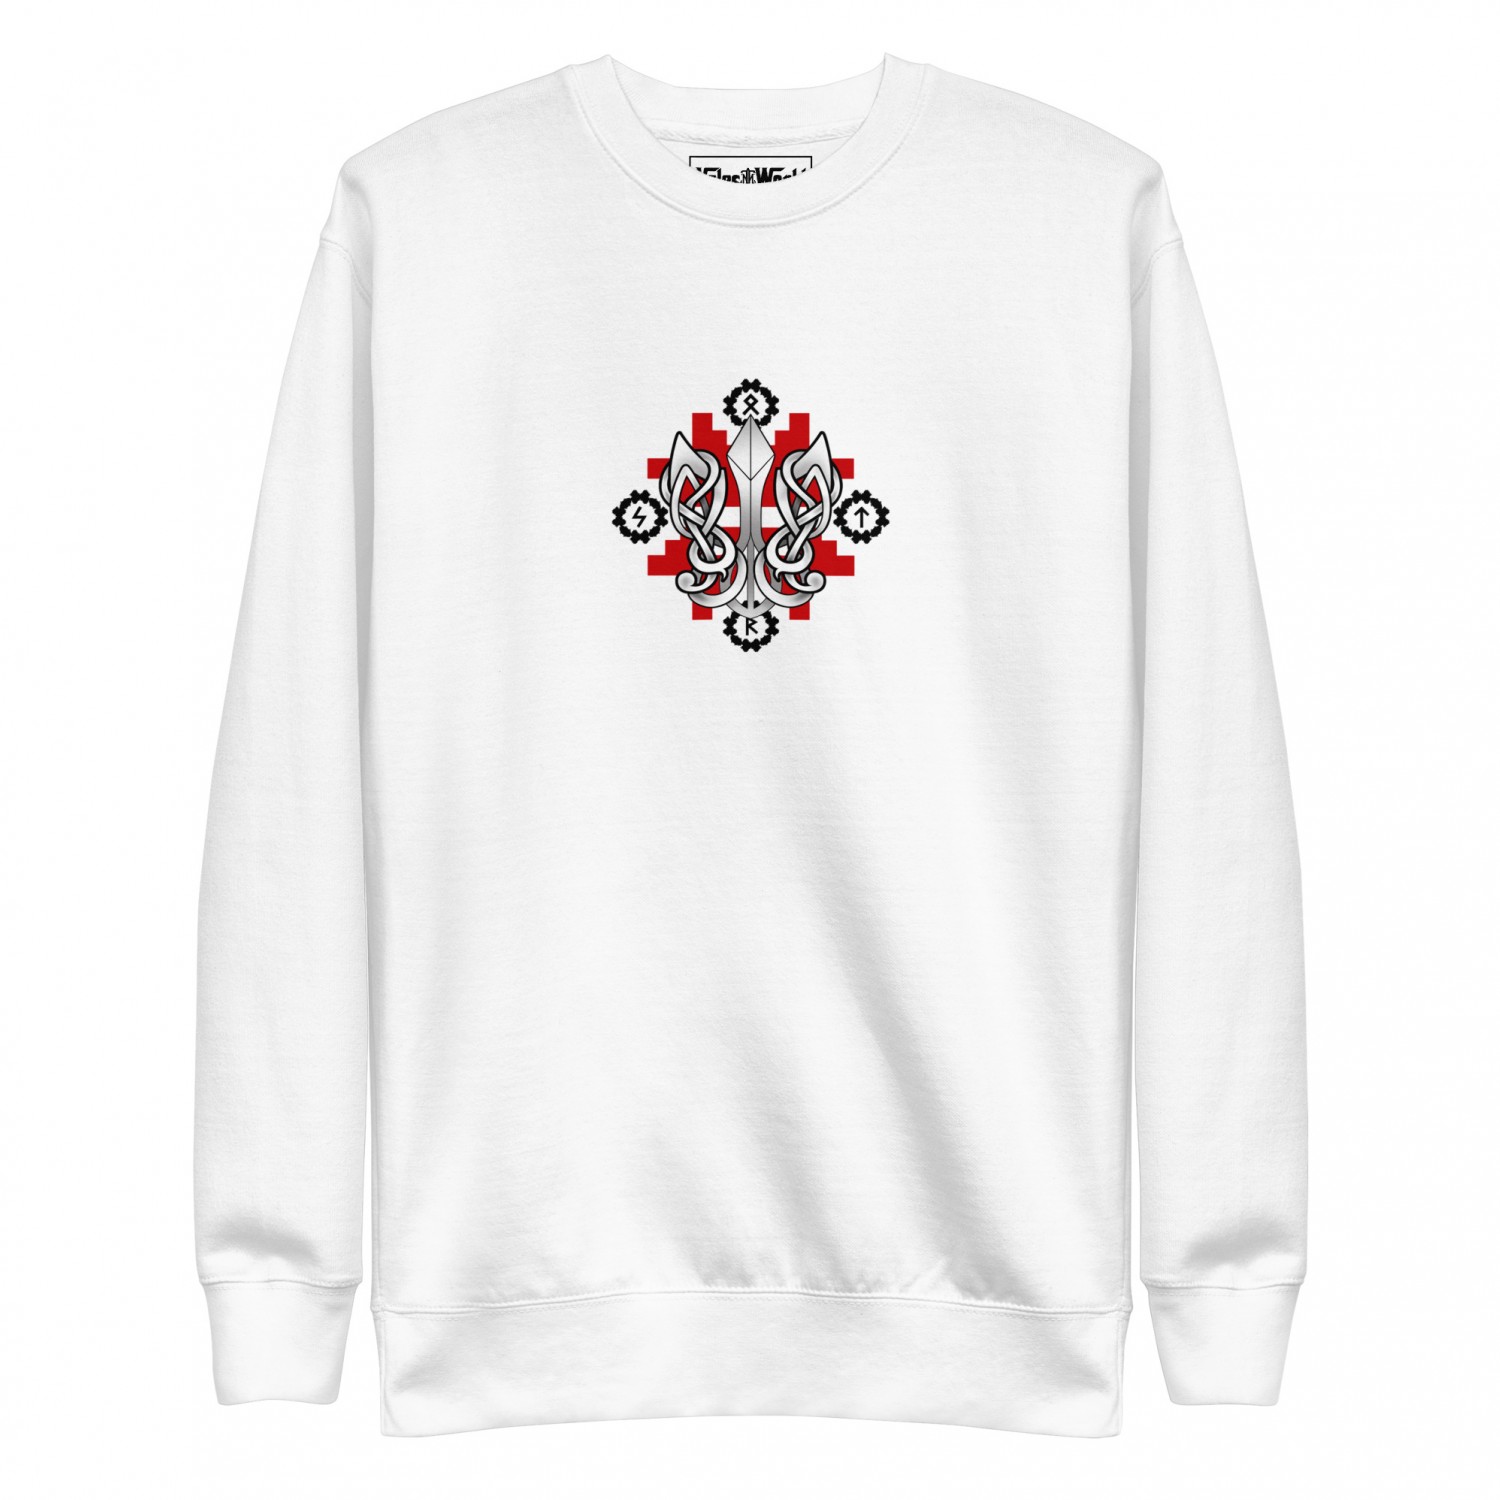 Sweatshirt "Ukraine style"